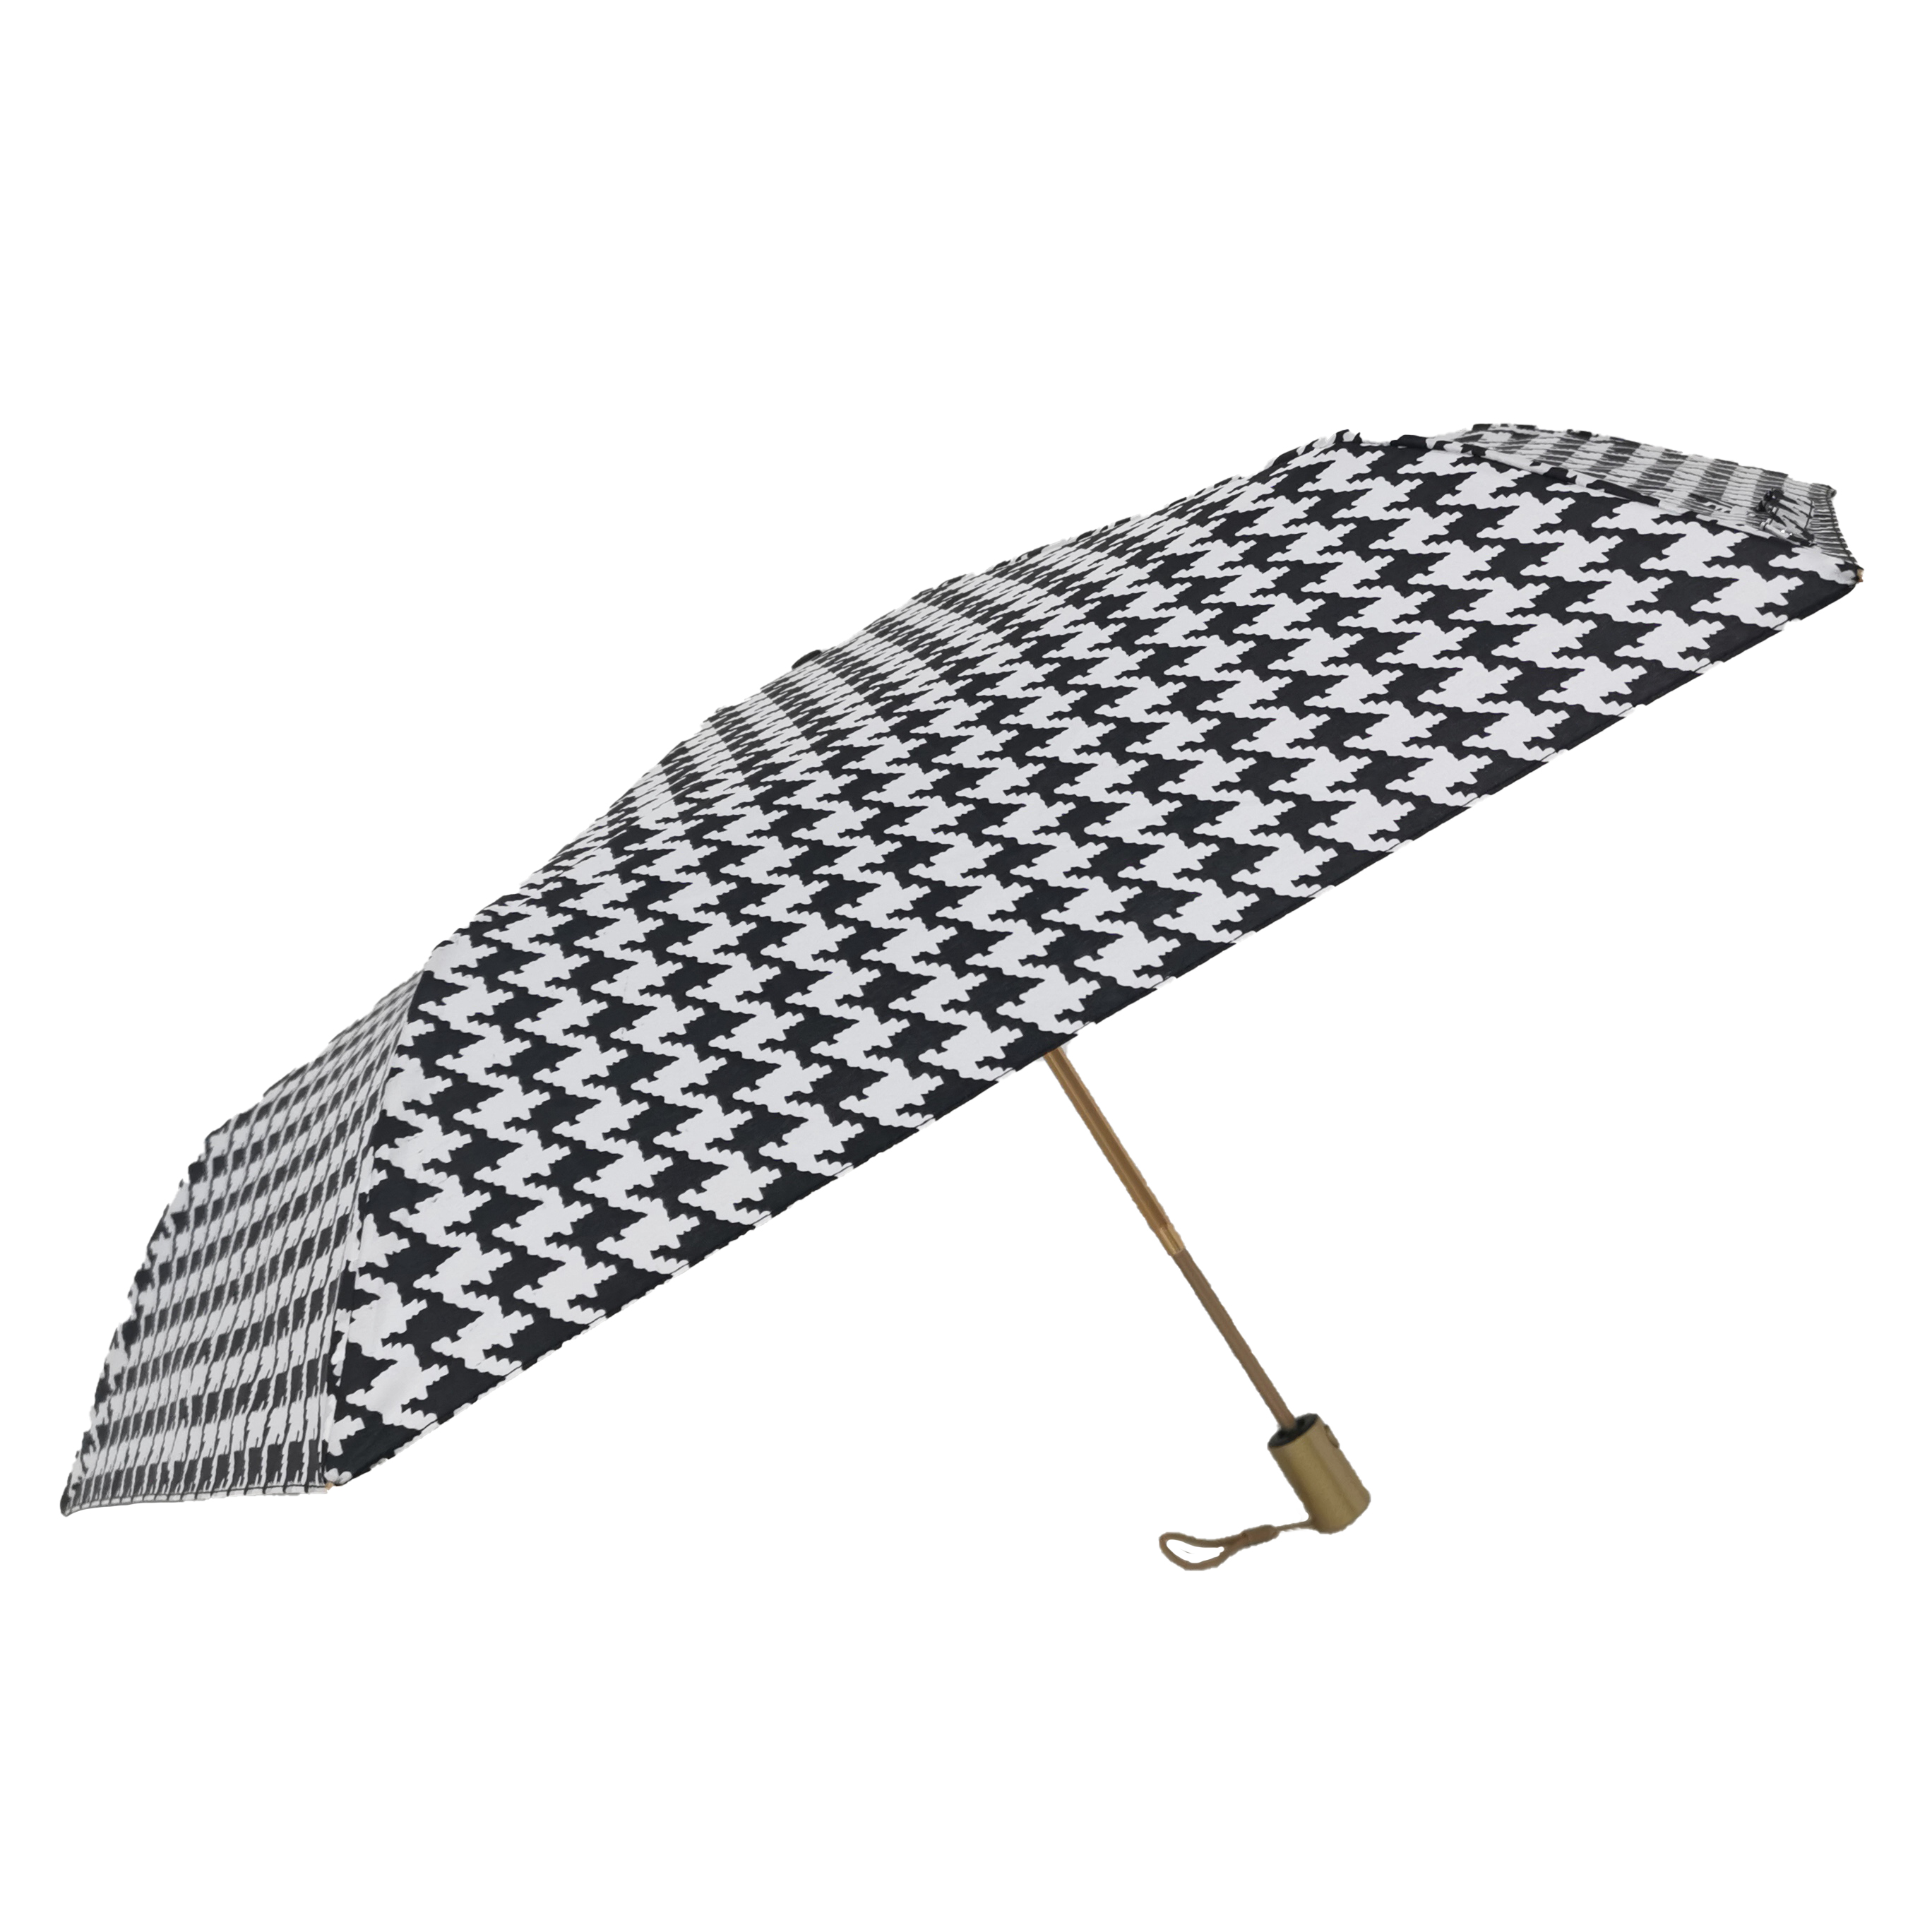 https://www.hodaumbrella.com/3-fold-umbrella-automatic-open-manual-close-01-product/